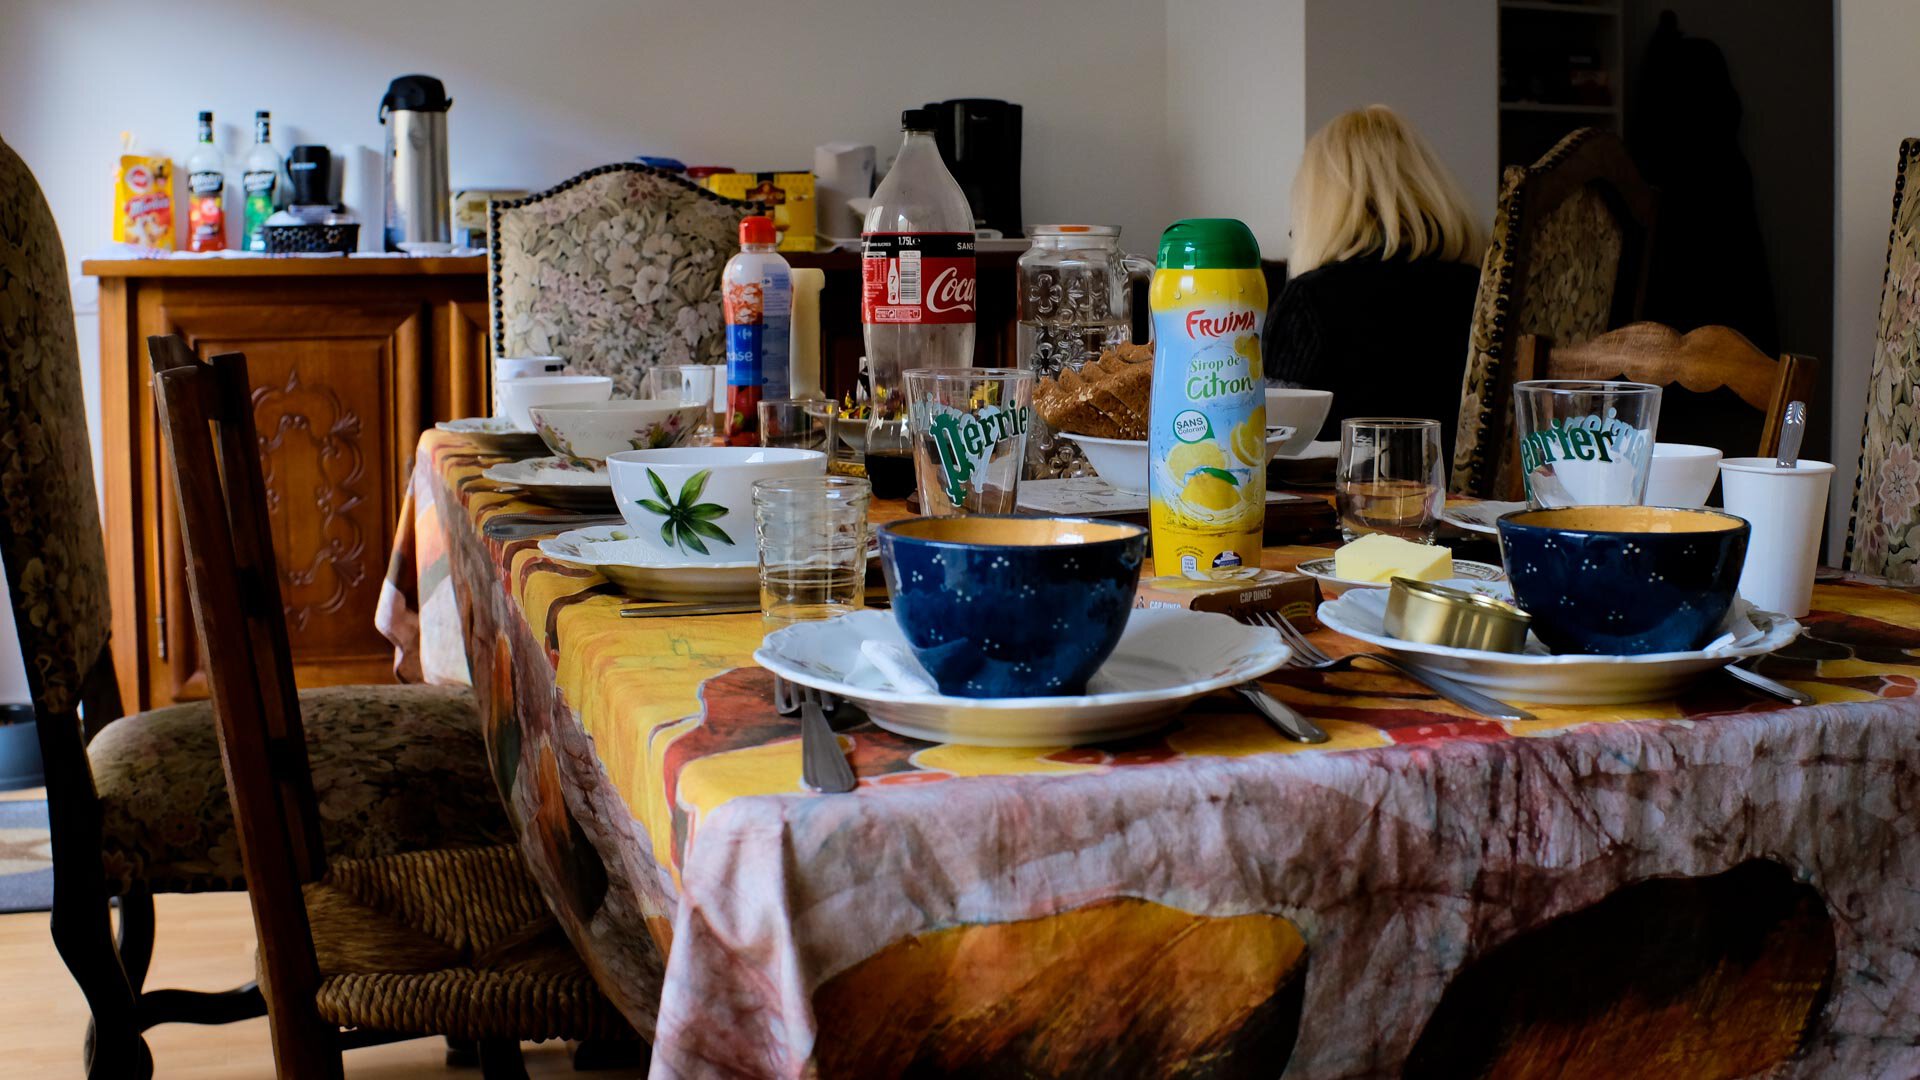 La table est mise dans la maison d'Élizabeth, avec des boisons et nourriture disposées sur la table. Le repas est dressé pour les personnes sans abri.